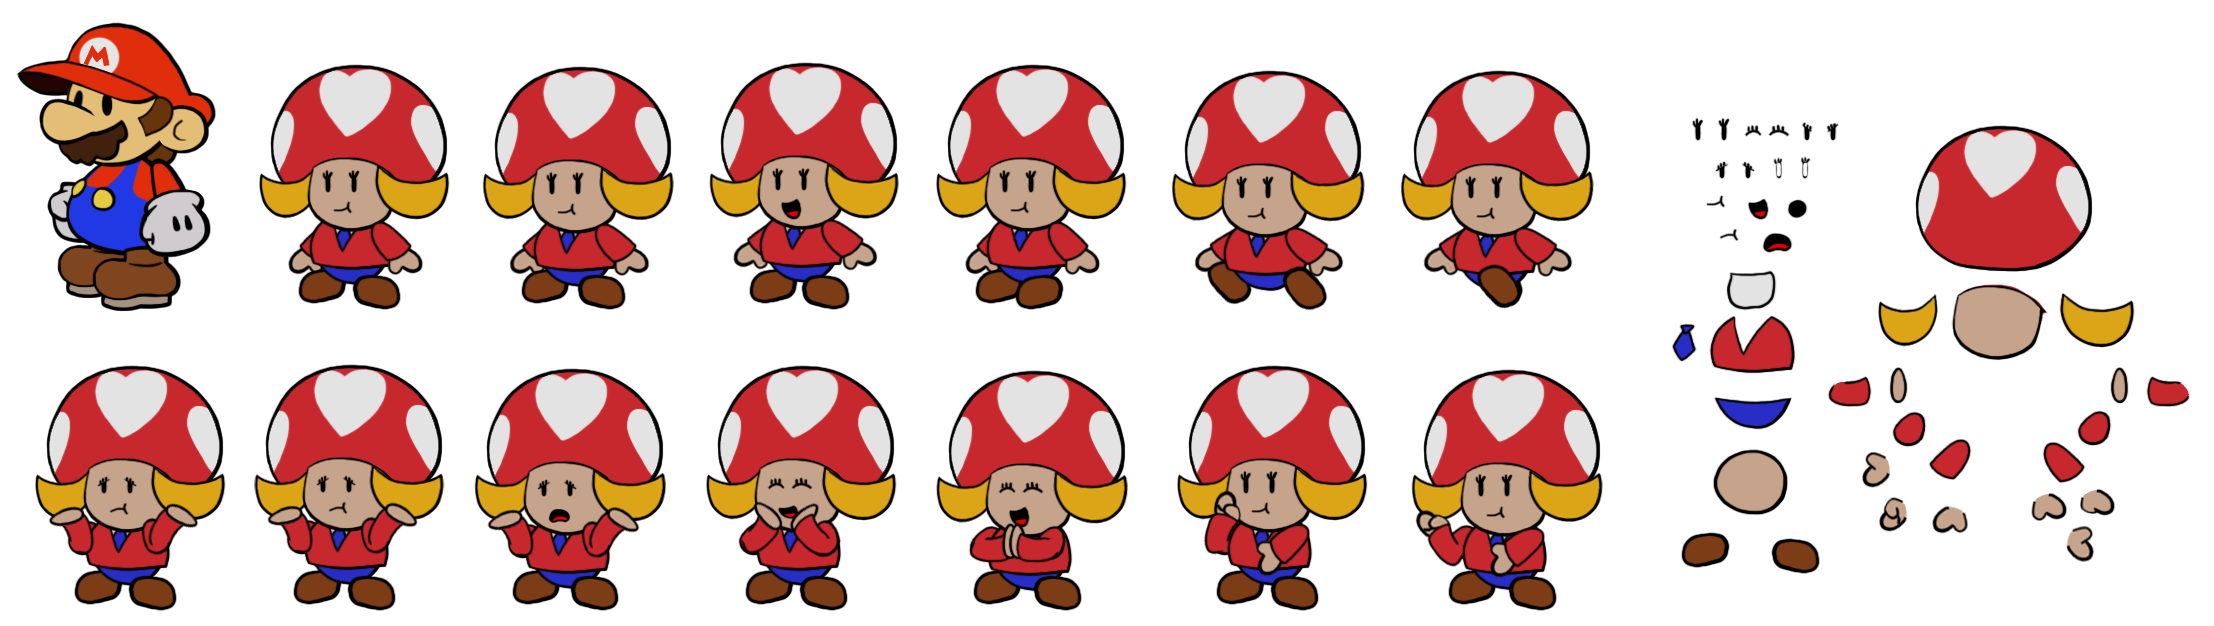 Paper Mario Customs - Vanna T. (Paper Mario-Style)